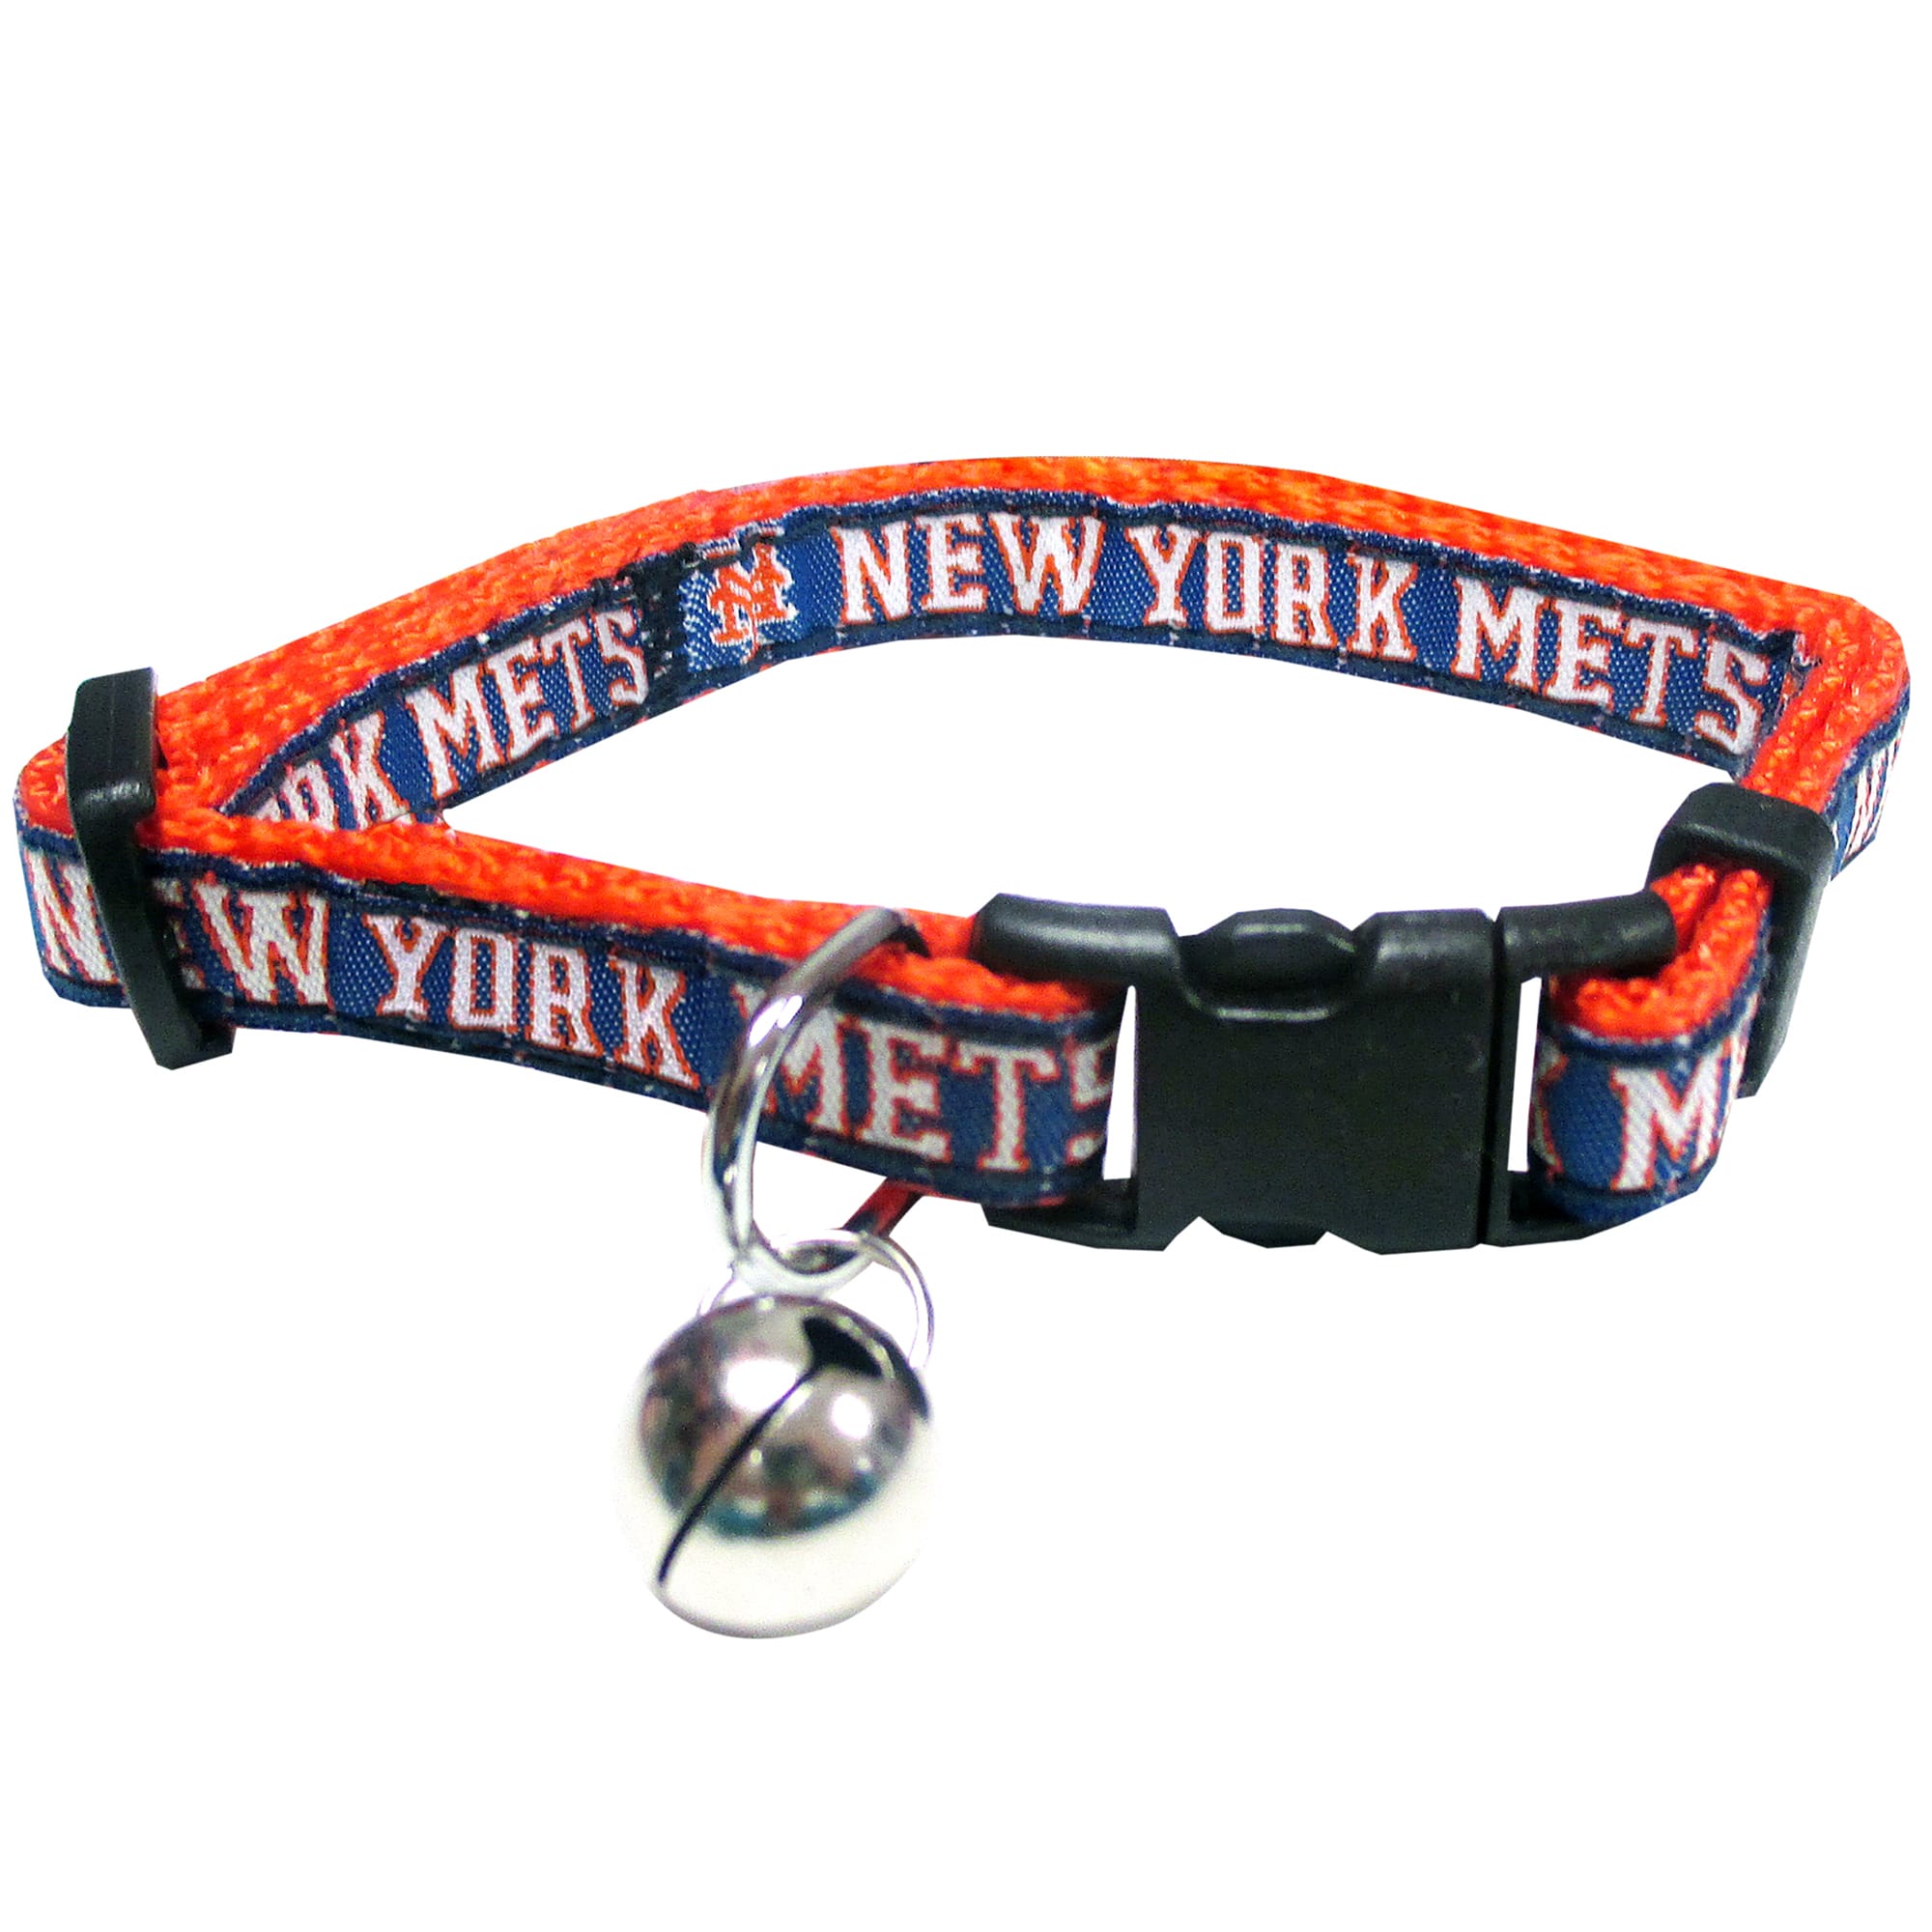 New York Mets Pet Gear, Mets Collars, Chew Toys, Pet Carriers